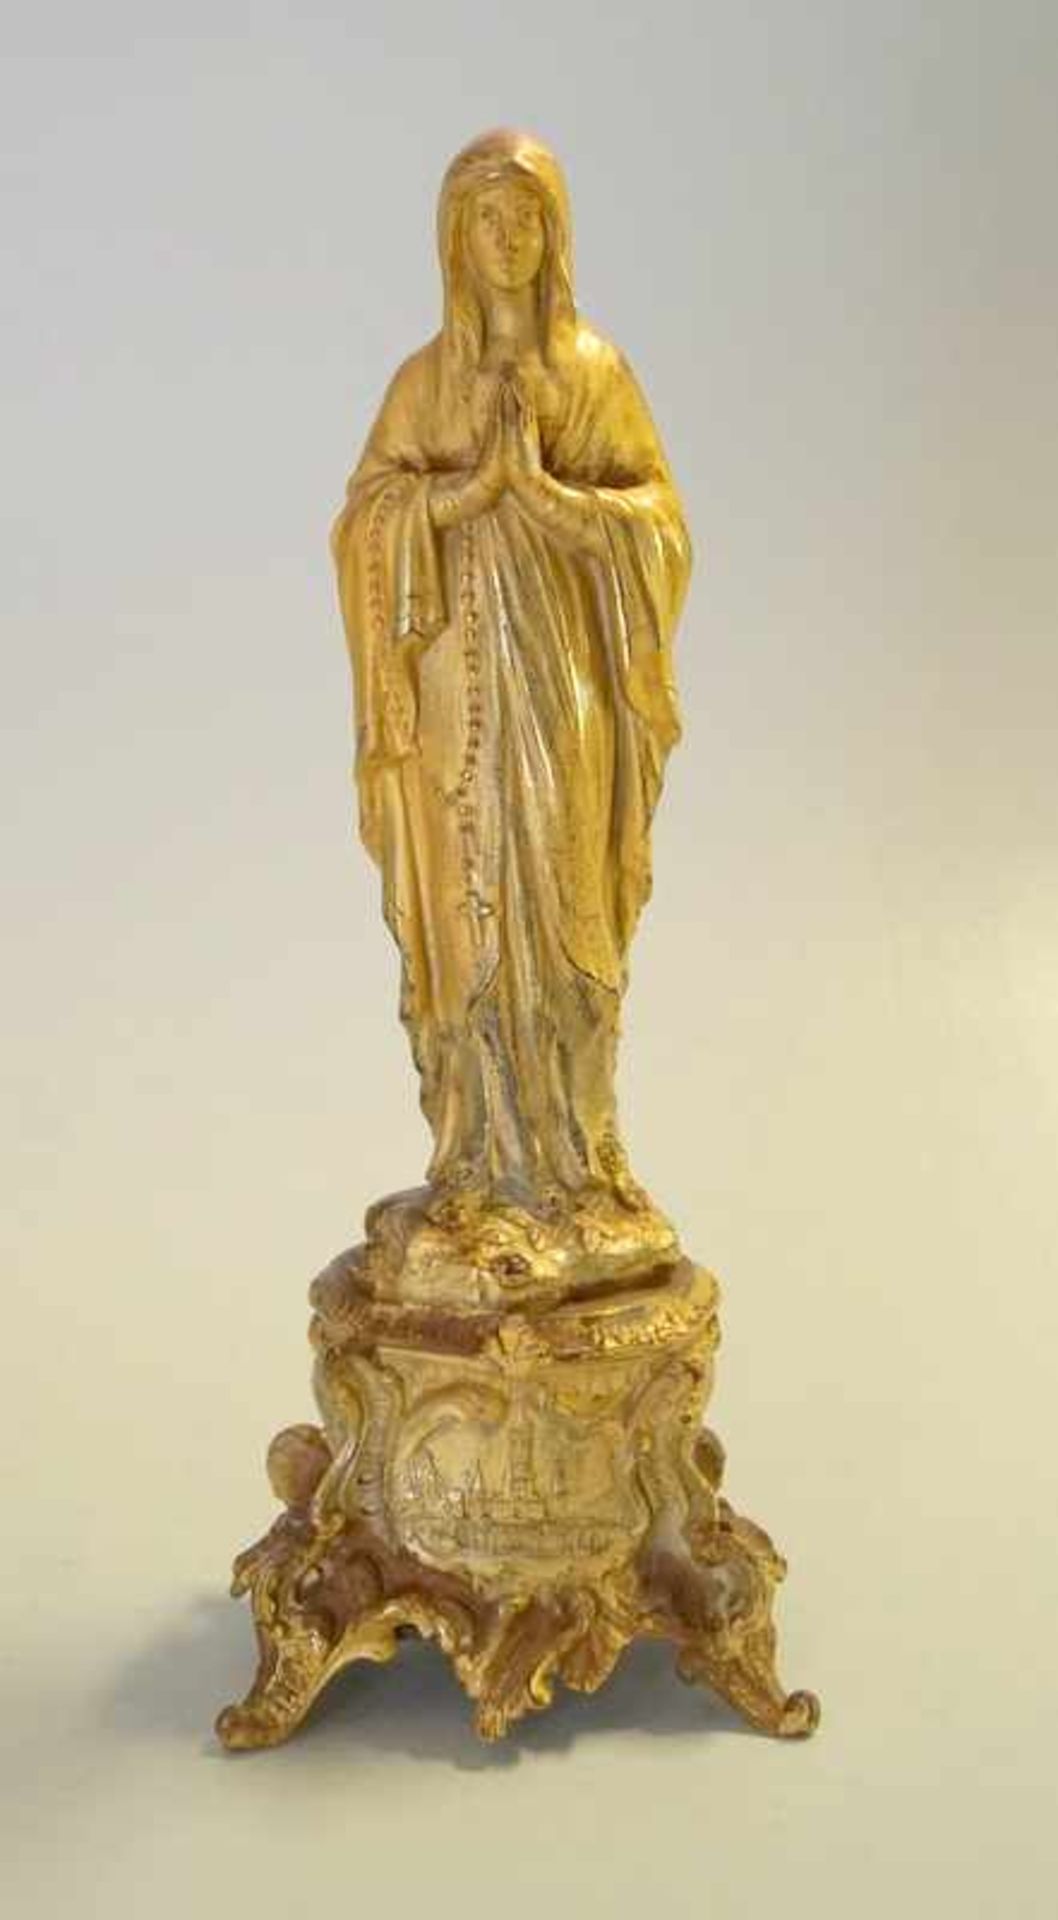 Madonna von Lourdes, Zinkdruckguss vergoldet, mit Spieluhrauf Rocalliensockel mit dem Flachrelief